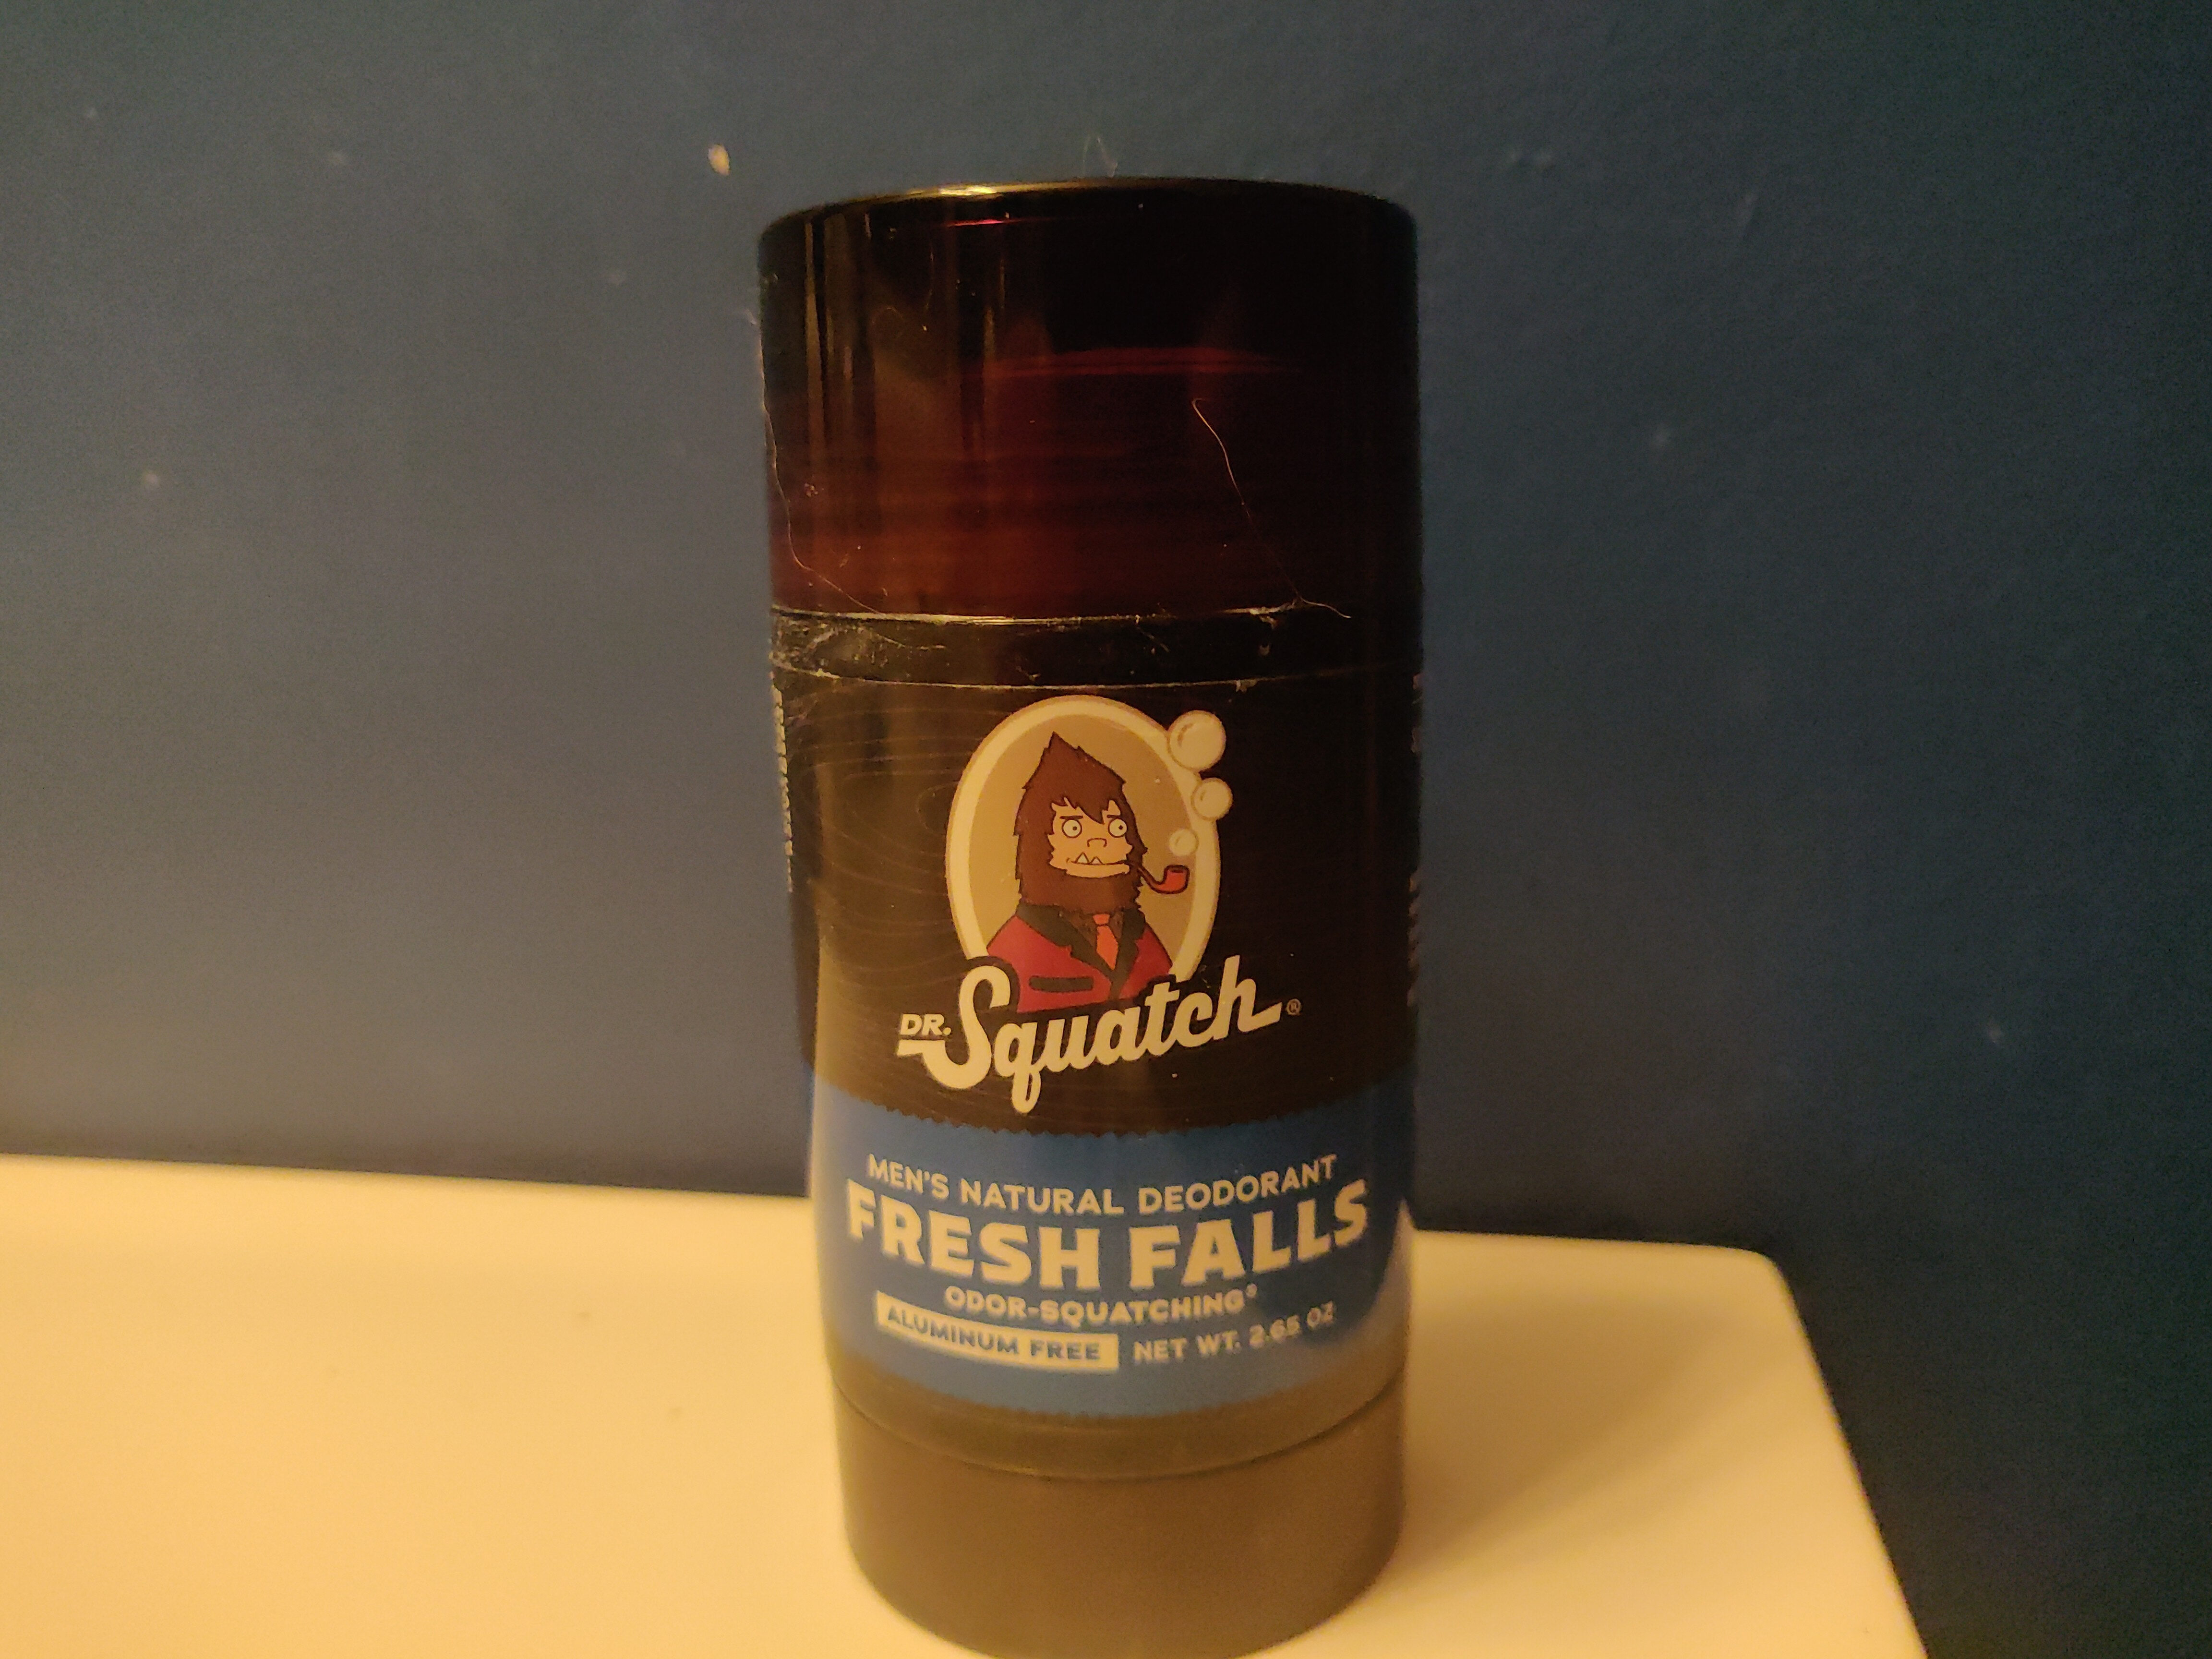 Fresh Falls Natural Deodorant - Dr. Squatch - 2.65 oz